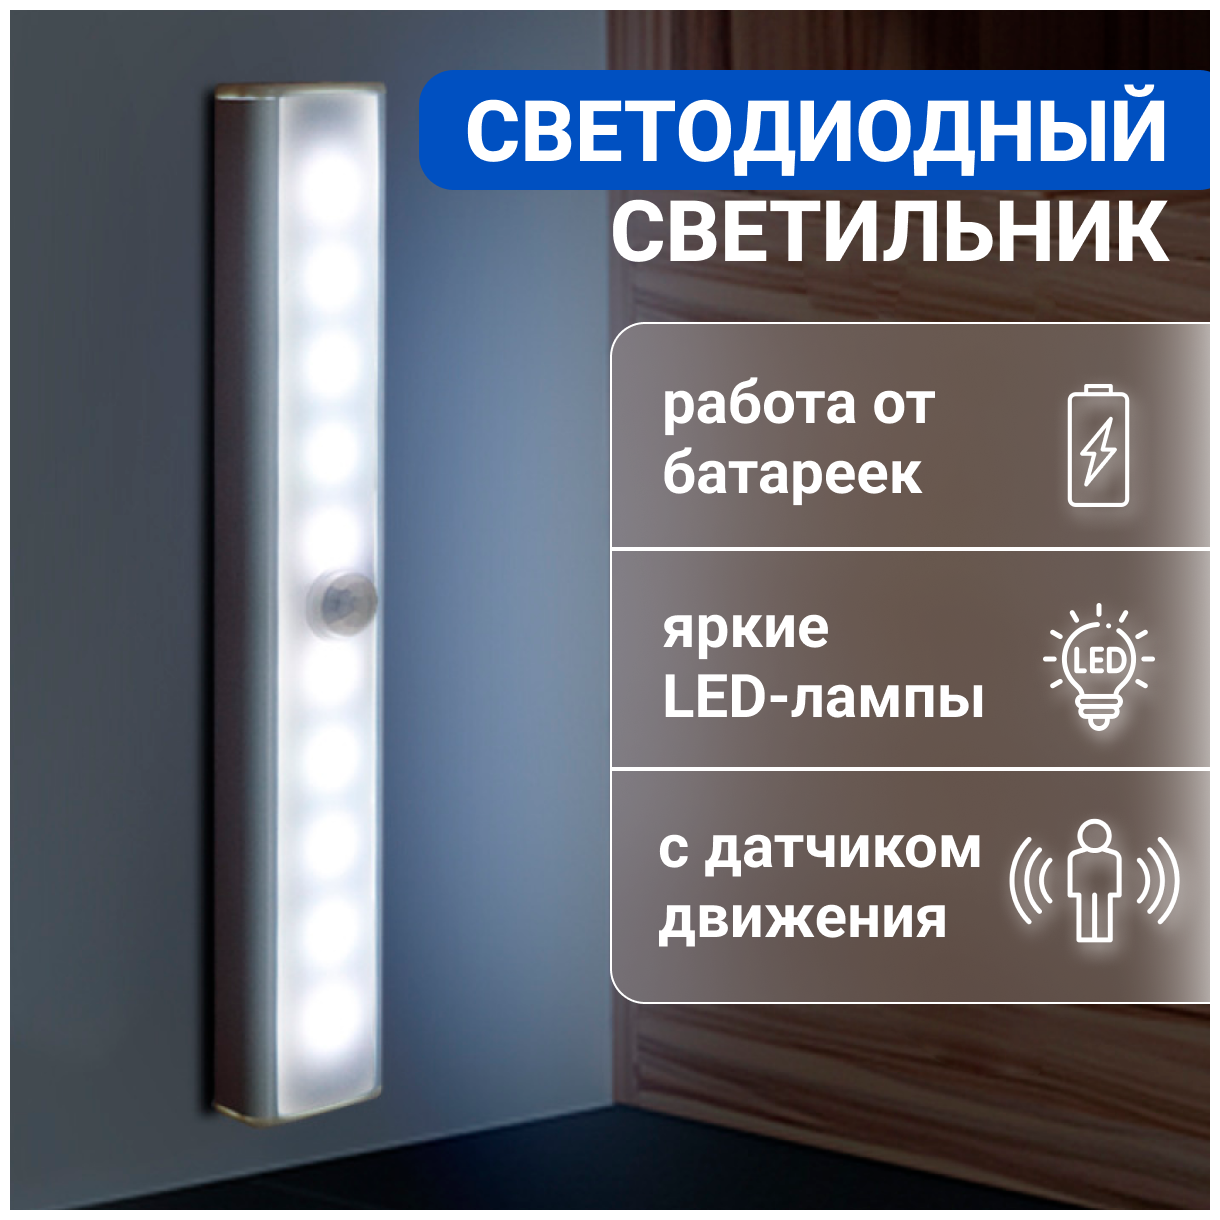 Мебельный светильник, умный беспроводной с датчиком движения и света, автоматический, для шкафа, кухни, гардероба, 190мм, холодный белый, Zurkibet — купить в интернет-магазине по низкой цене на Яндекс Маркете